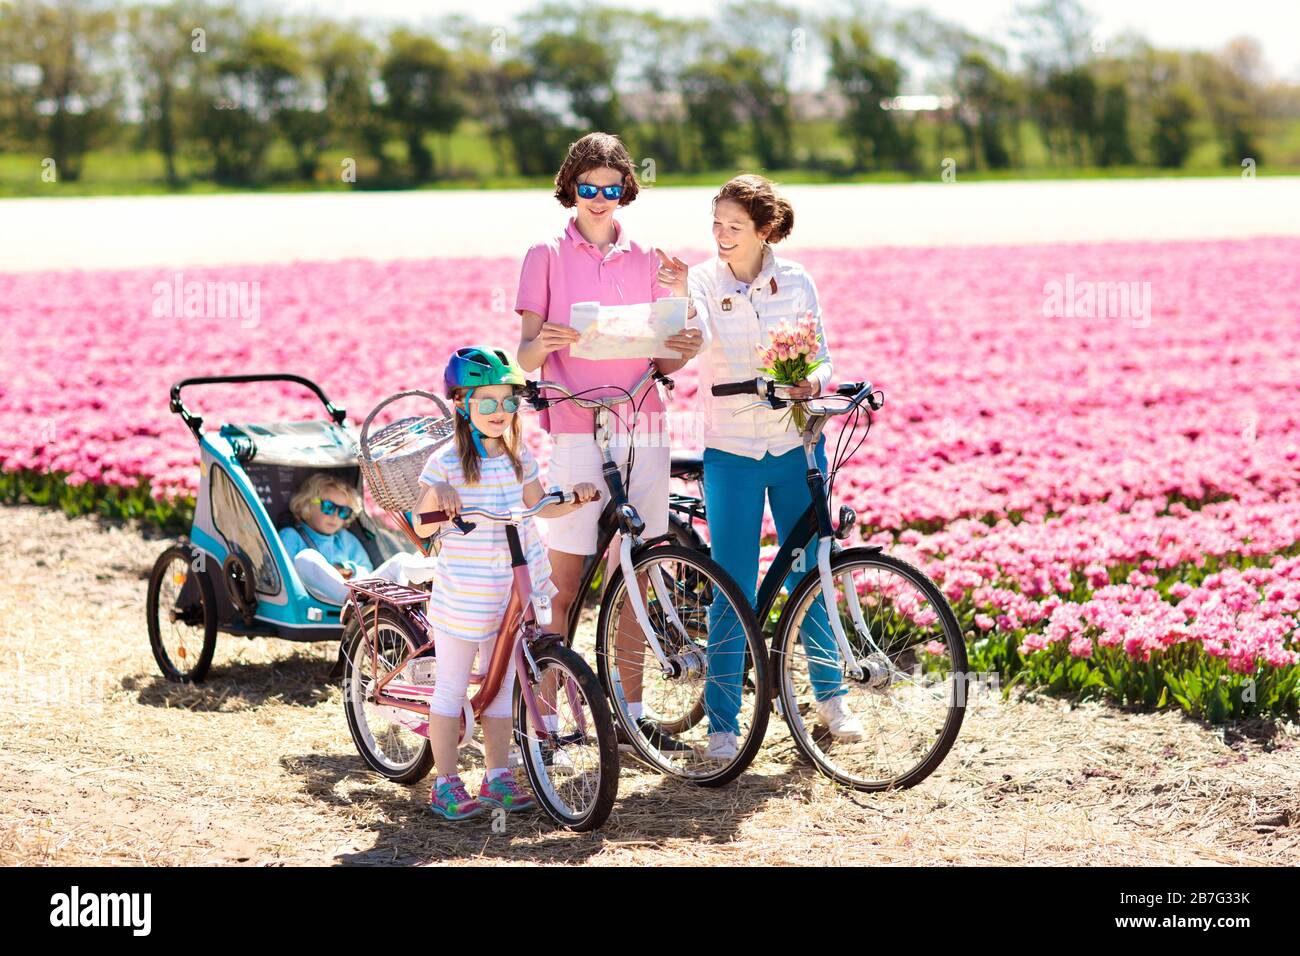 Gerne holländische Familie Reiten Fahrrad in der Tulpe Blume Felder in den  Niederlanden. Mutter und Kinder auf dem Fahrrad an blühenden Tulpen in  Holland. Baby in Bike Trailer Stockfotografie - Alamy